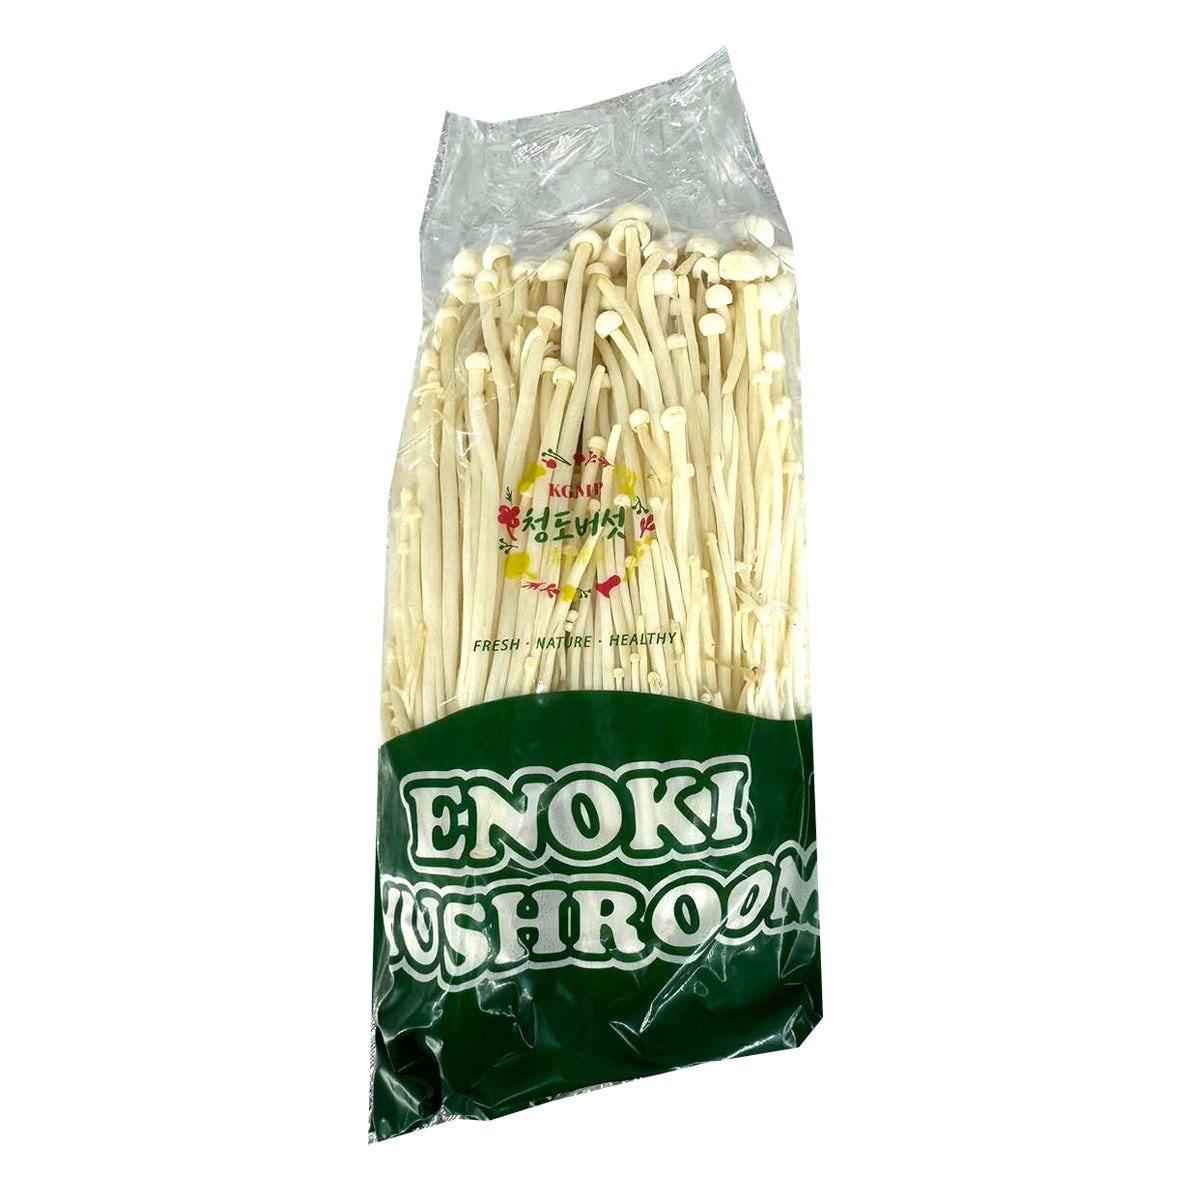 Chois-Enoki-Mushrooms---300g -1